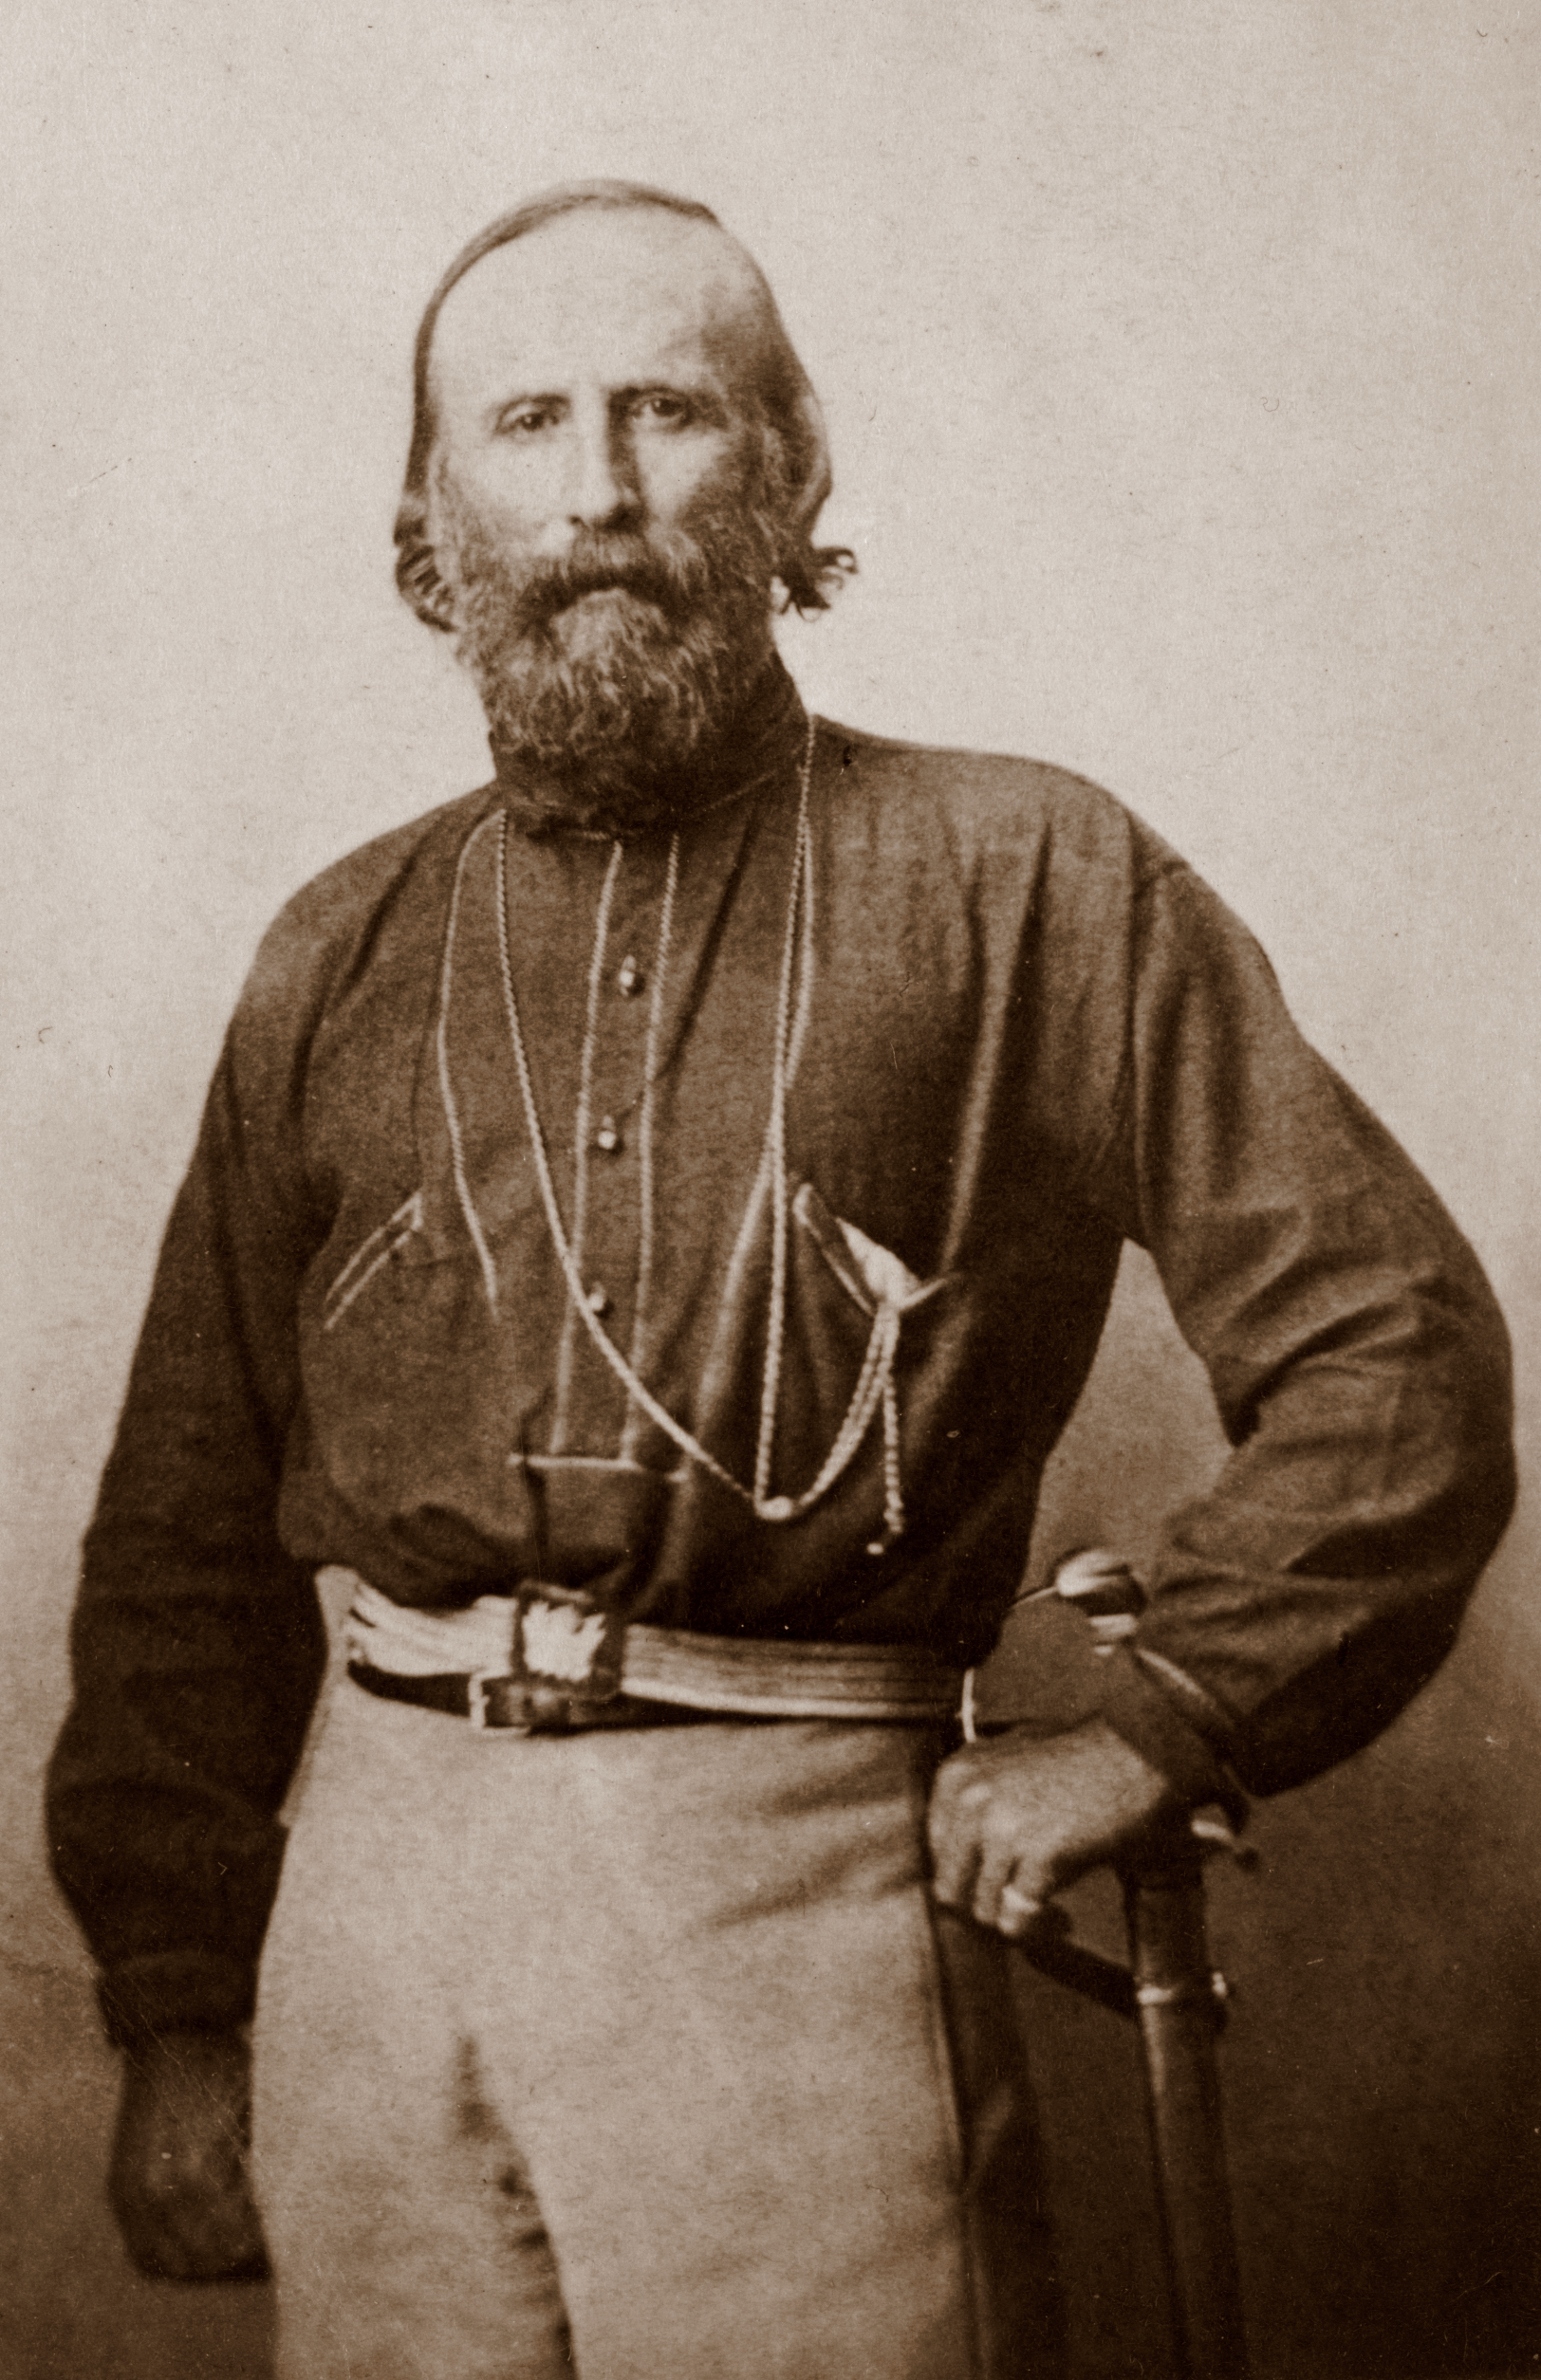  Biografía de Giuseppe Garibaldi